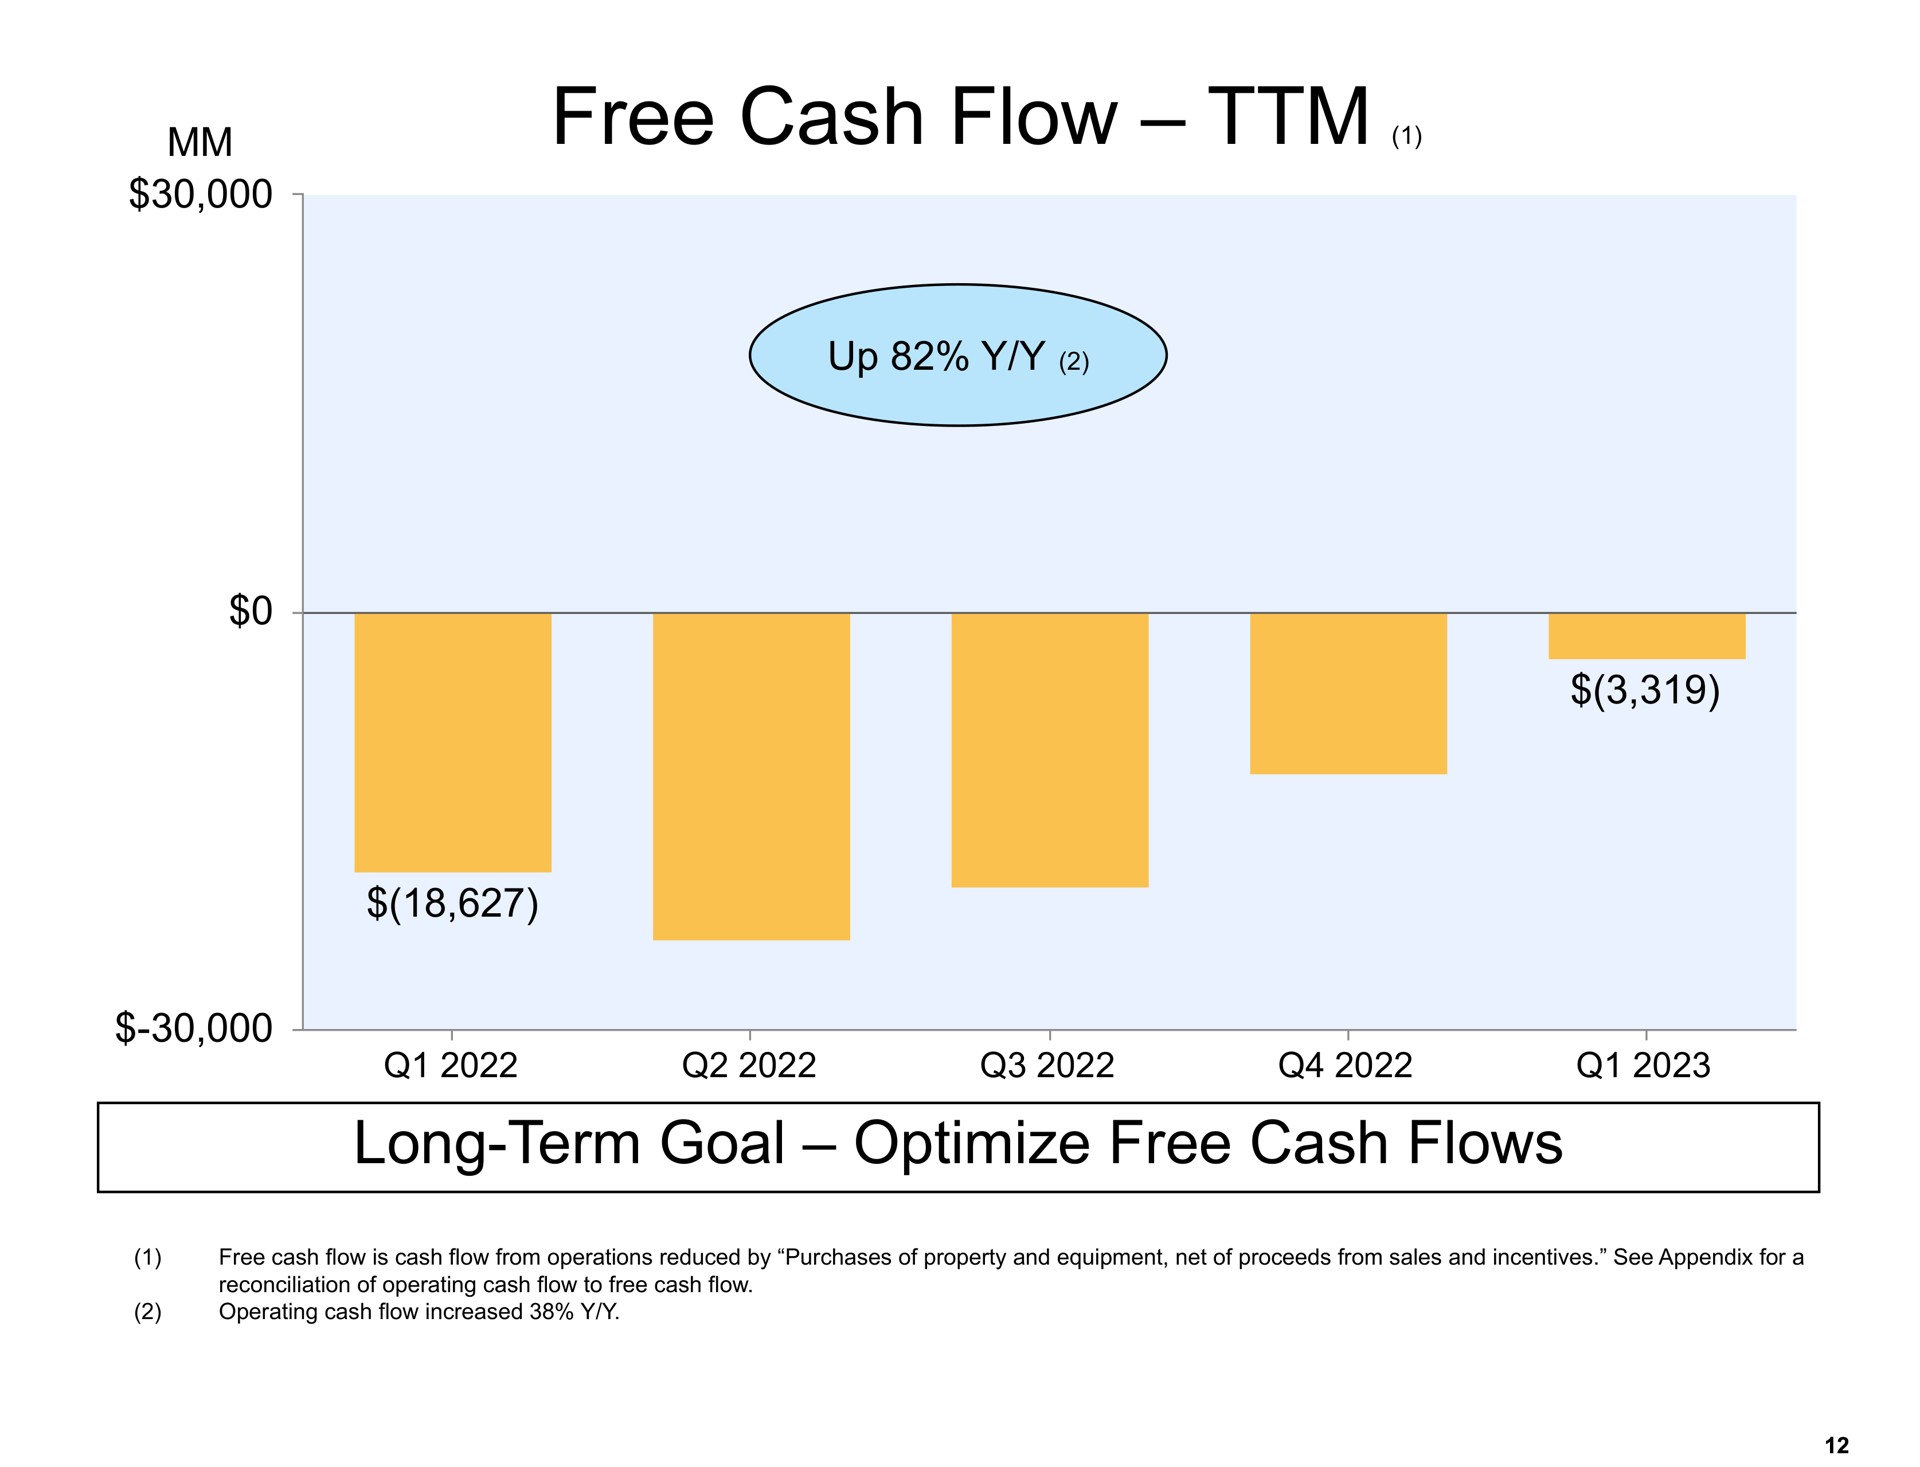 free cash flow long term goal optimize free cash flows vim | Amazon